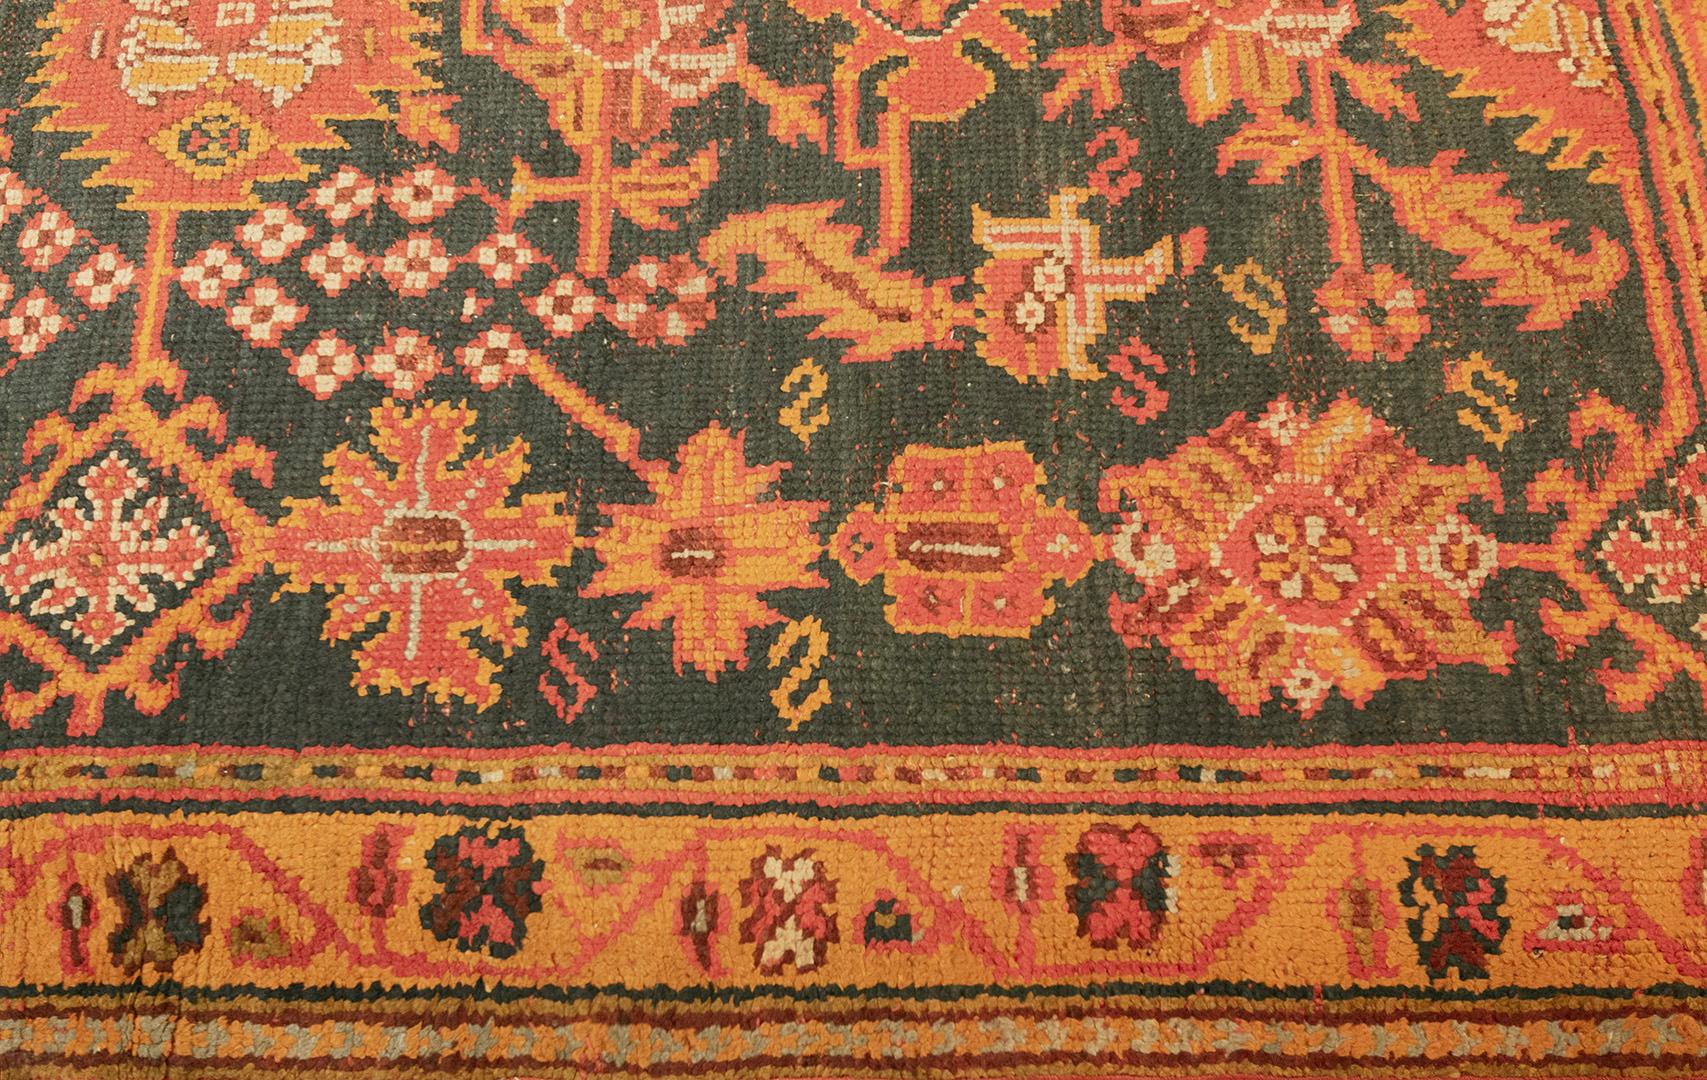 Dieser lebhafte, traditionelle, handgewebte türkische Oushak-Teppich hat ein tiefes, blaugrünes Feld mit gezackten Palmetten und geometrischen Blumenmotiven, die durch schräge Ranken verbunden sind, in einer verschnörkelten, goldenen